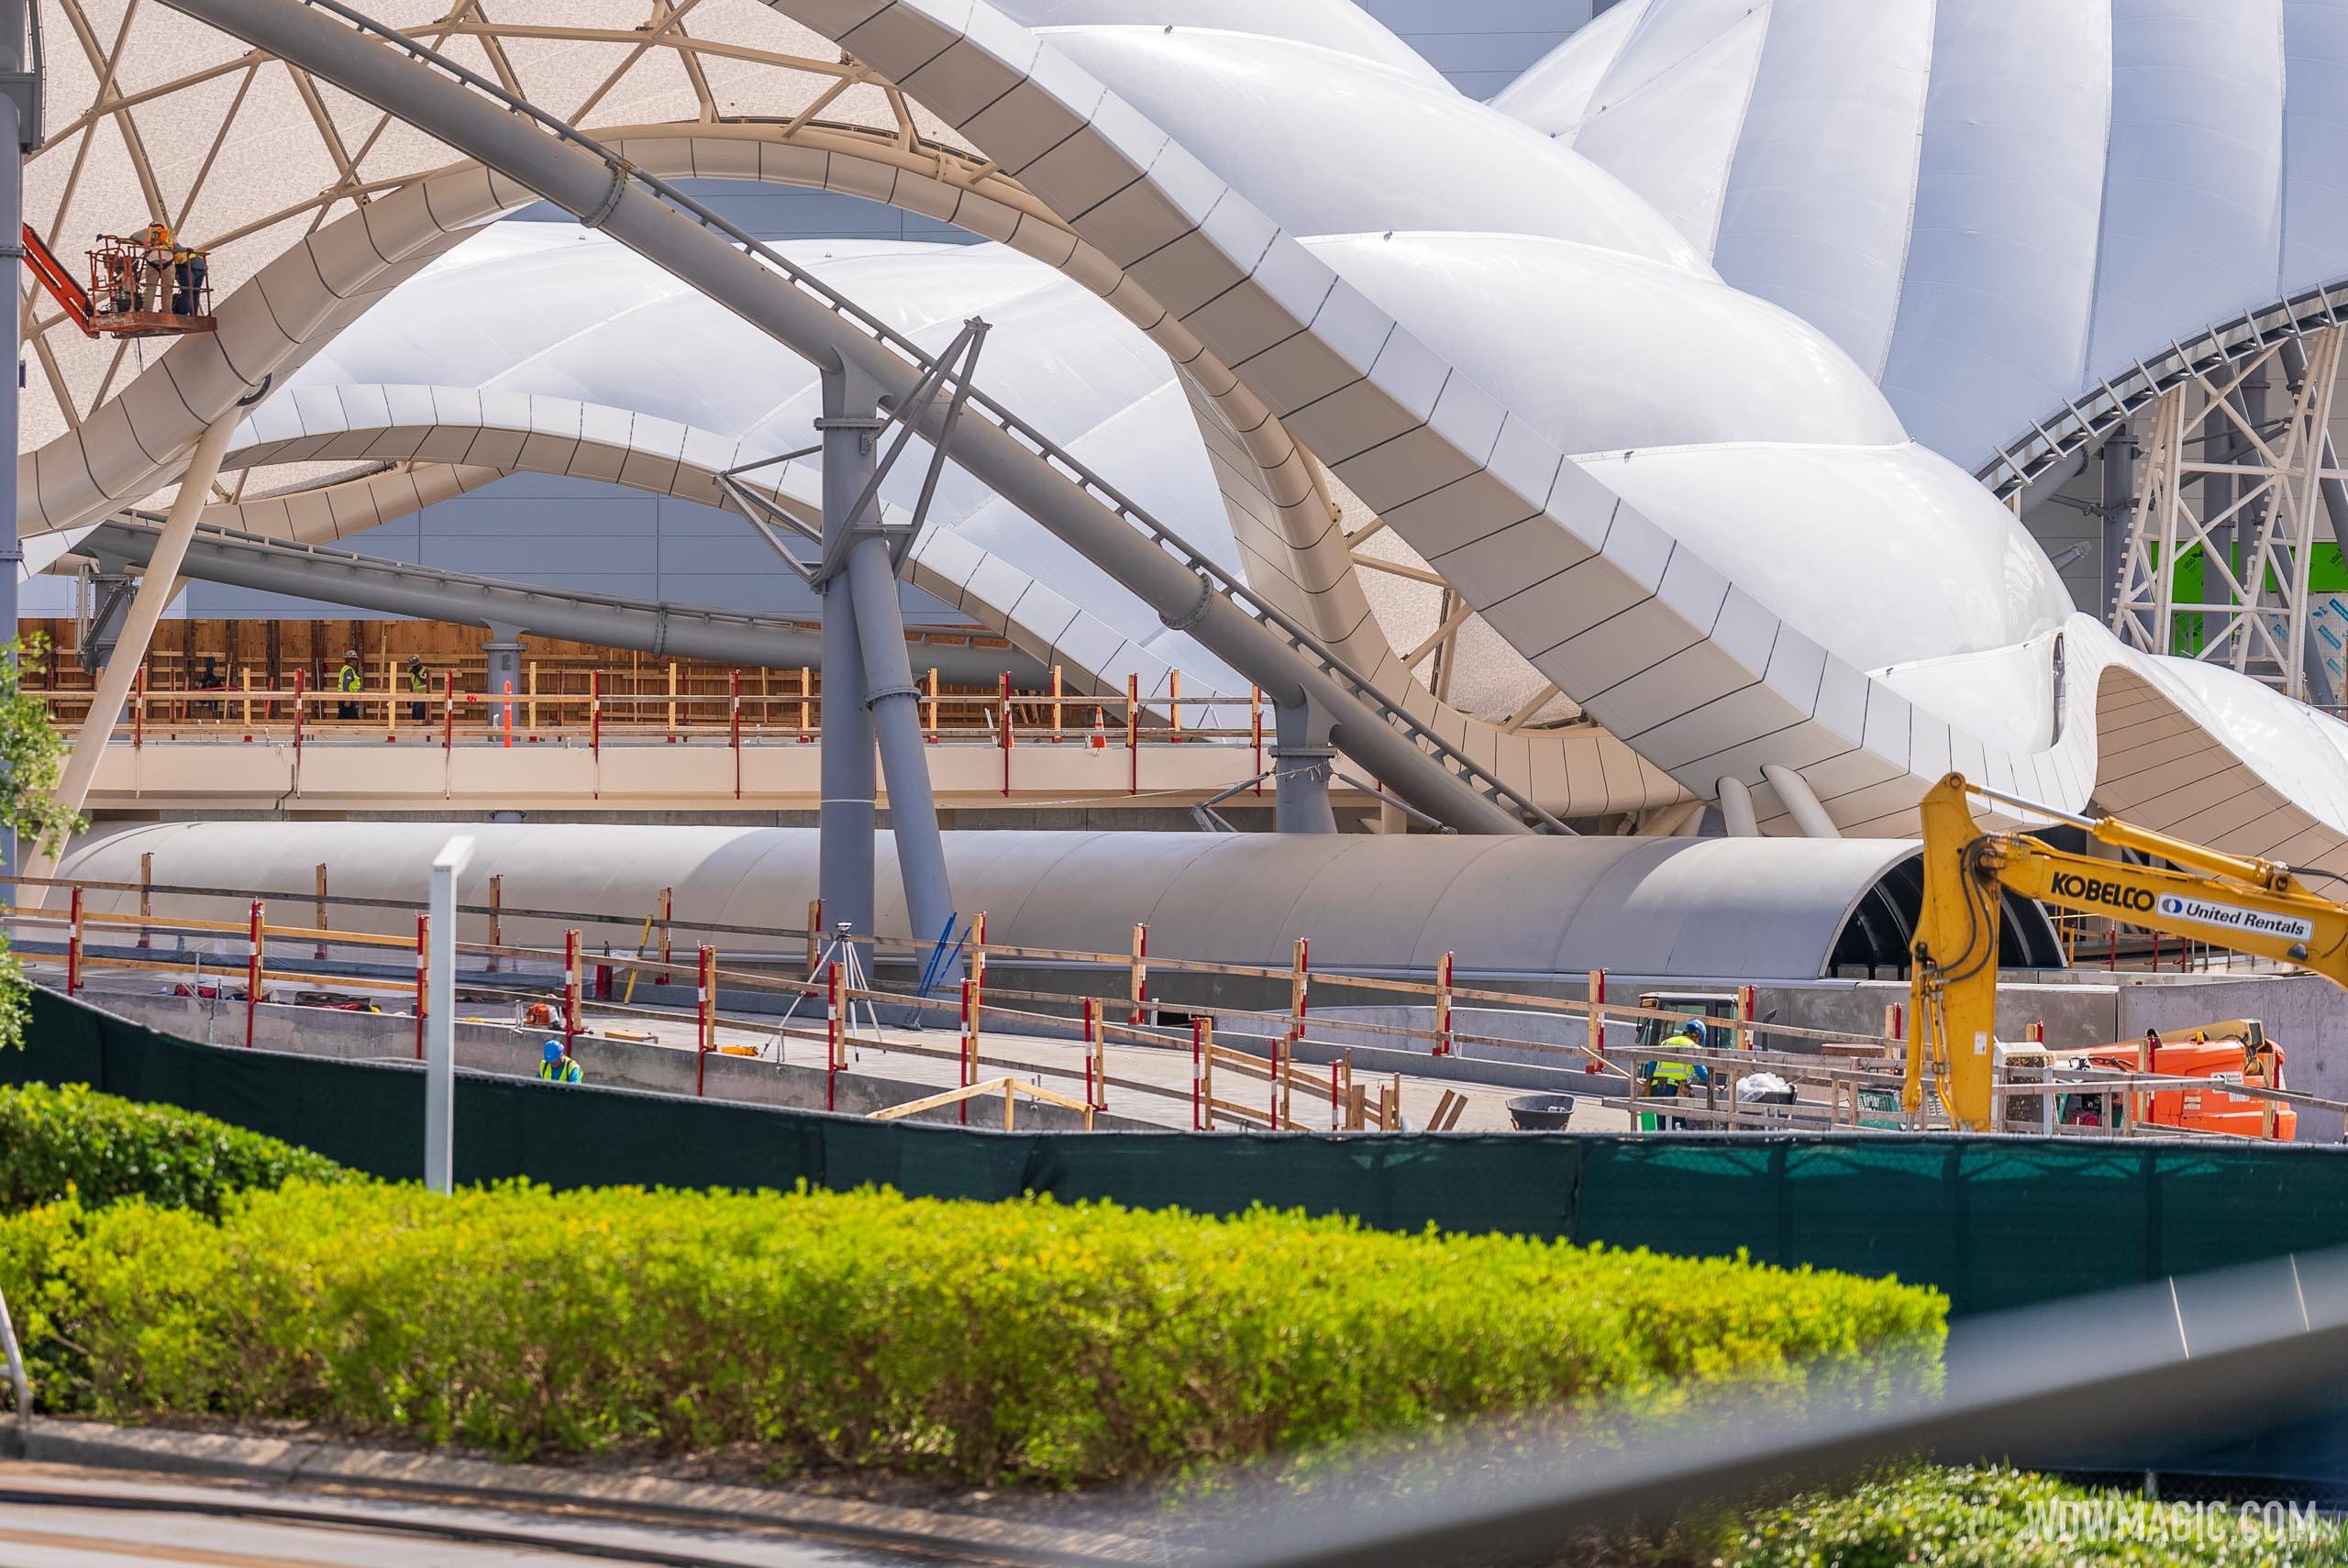 Walt Disney World Railroad track installation in Tomorrowland - May 23 2022